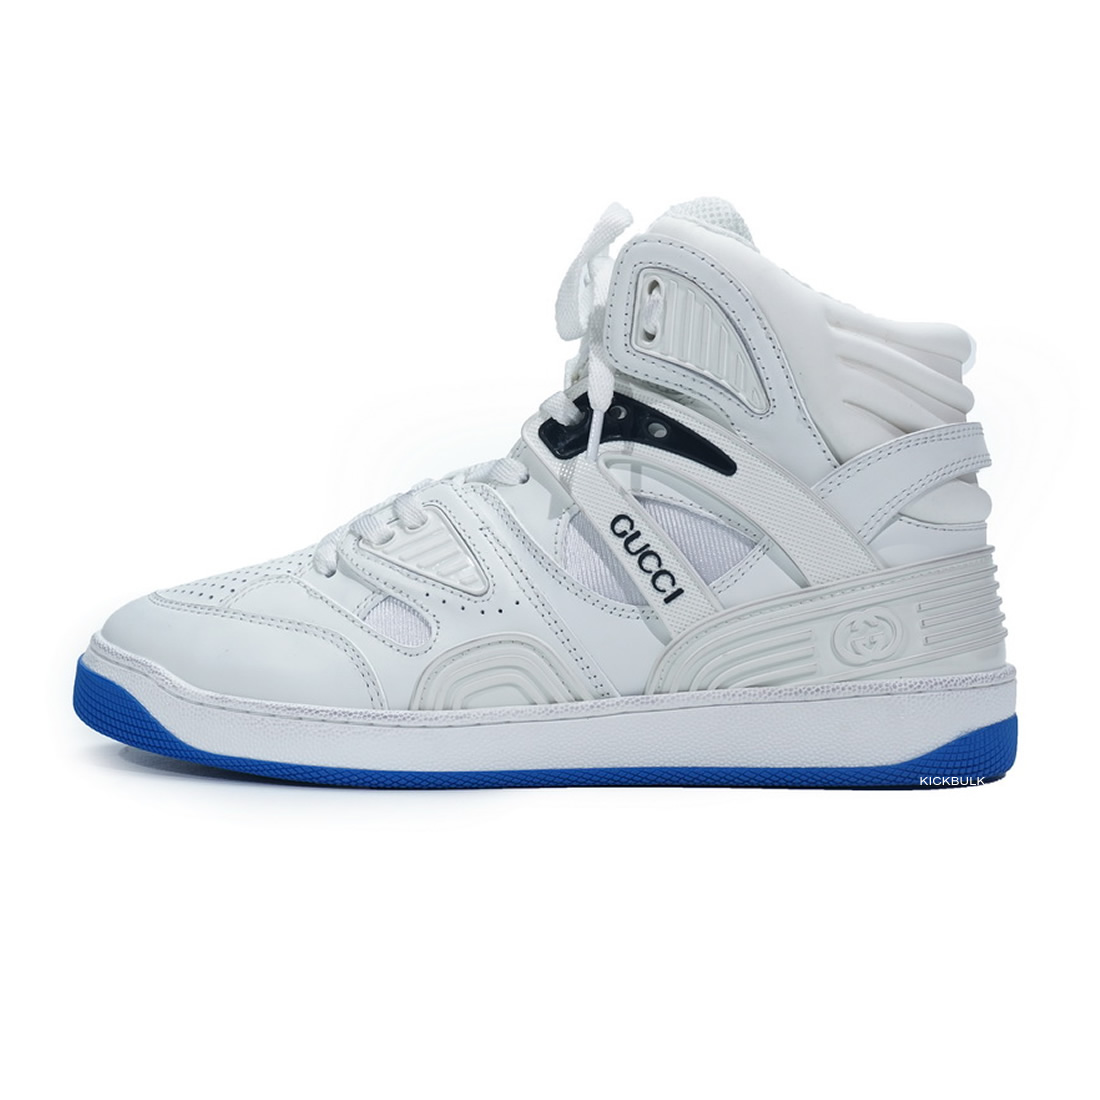 Gucci Basketball Shoes White Blue 6613032sh901072 1 - www.kickbulk.org